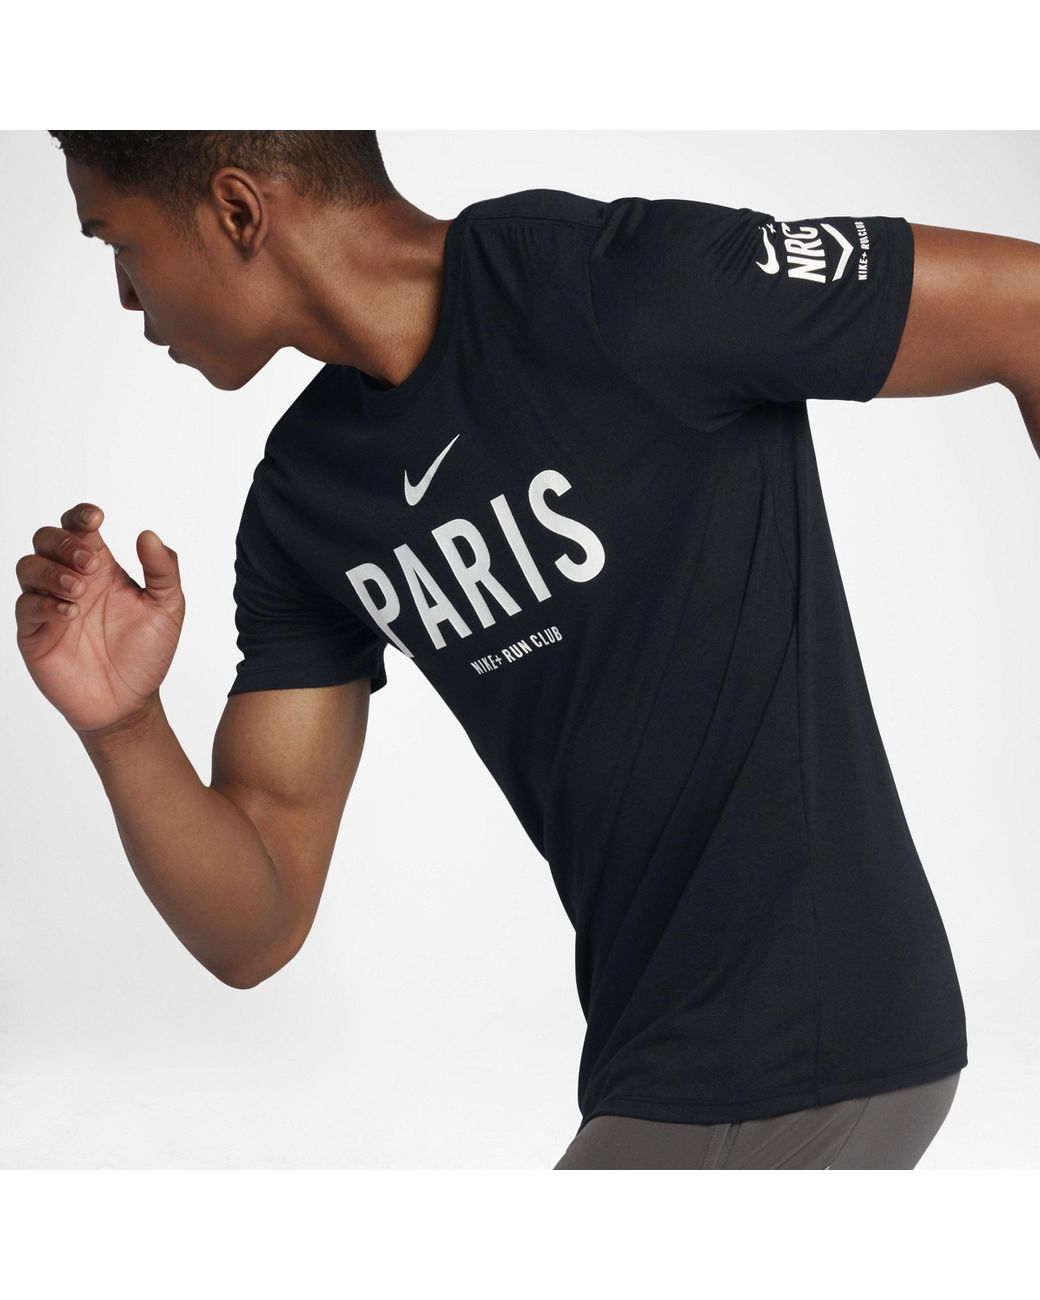 Nike Dry Run Club (paris) in Black for Men | Lyst UK